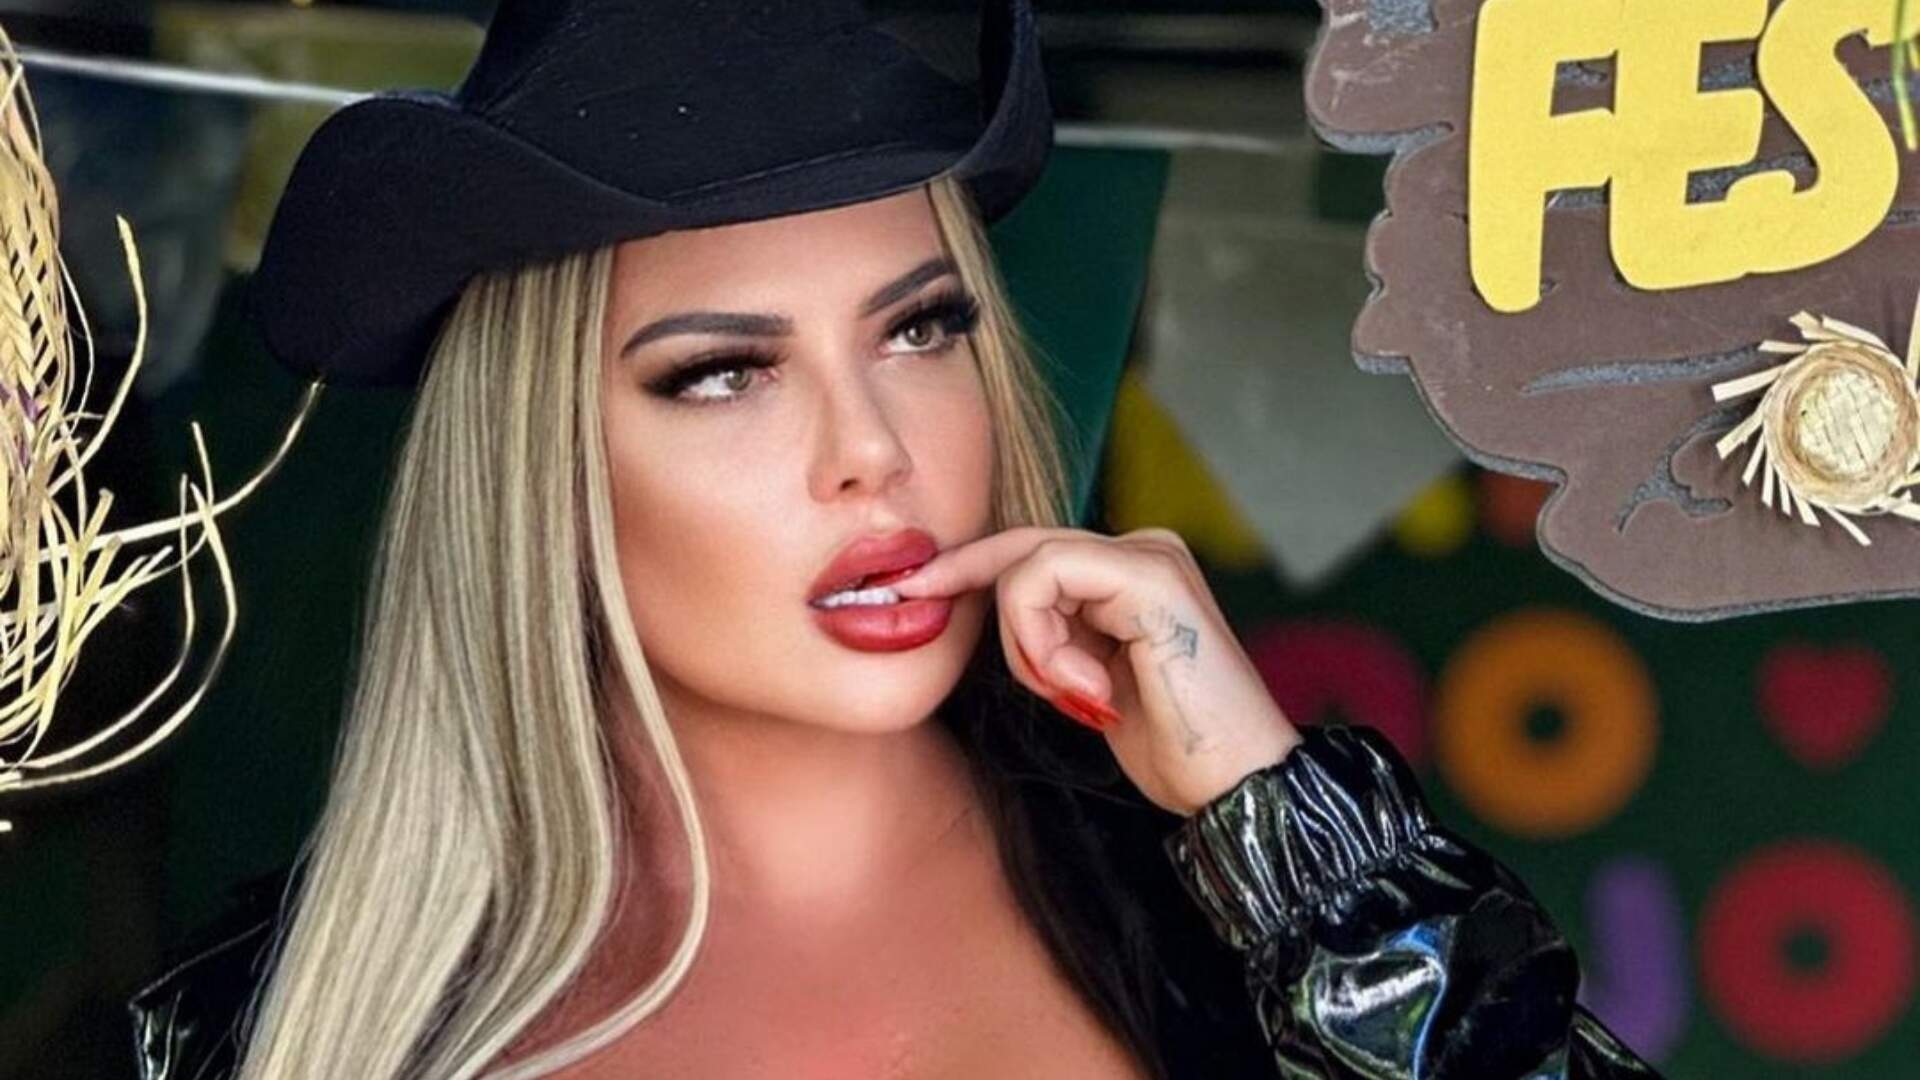 Loucura: Denise Rocha coloca roupa polêmica e esbanja sensualidade em festa junina; Não perca! - Metropolitana FM